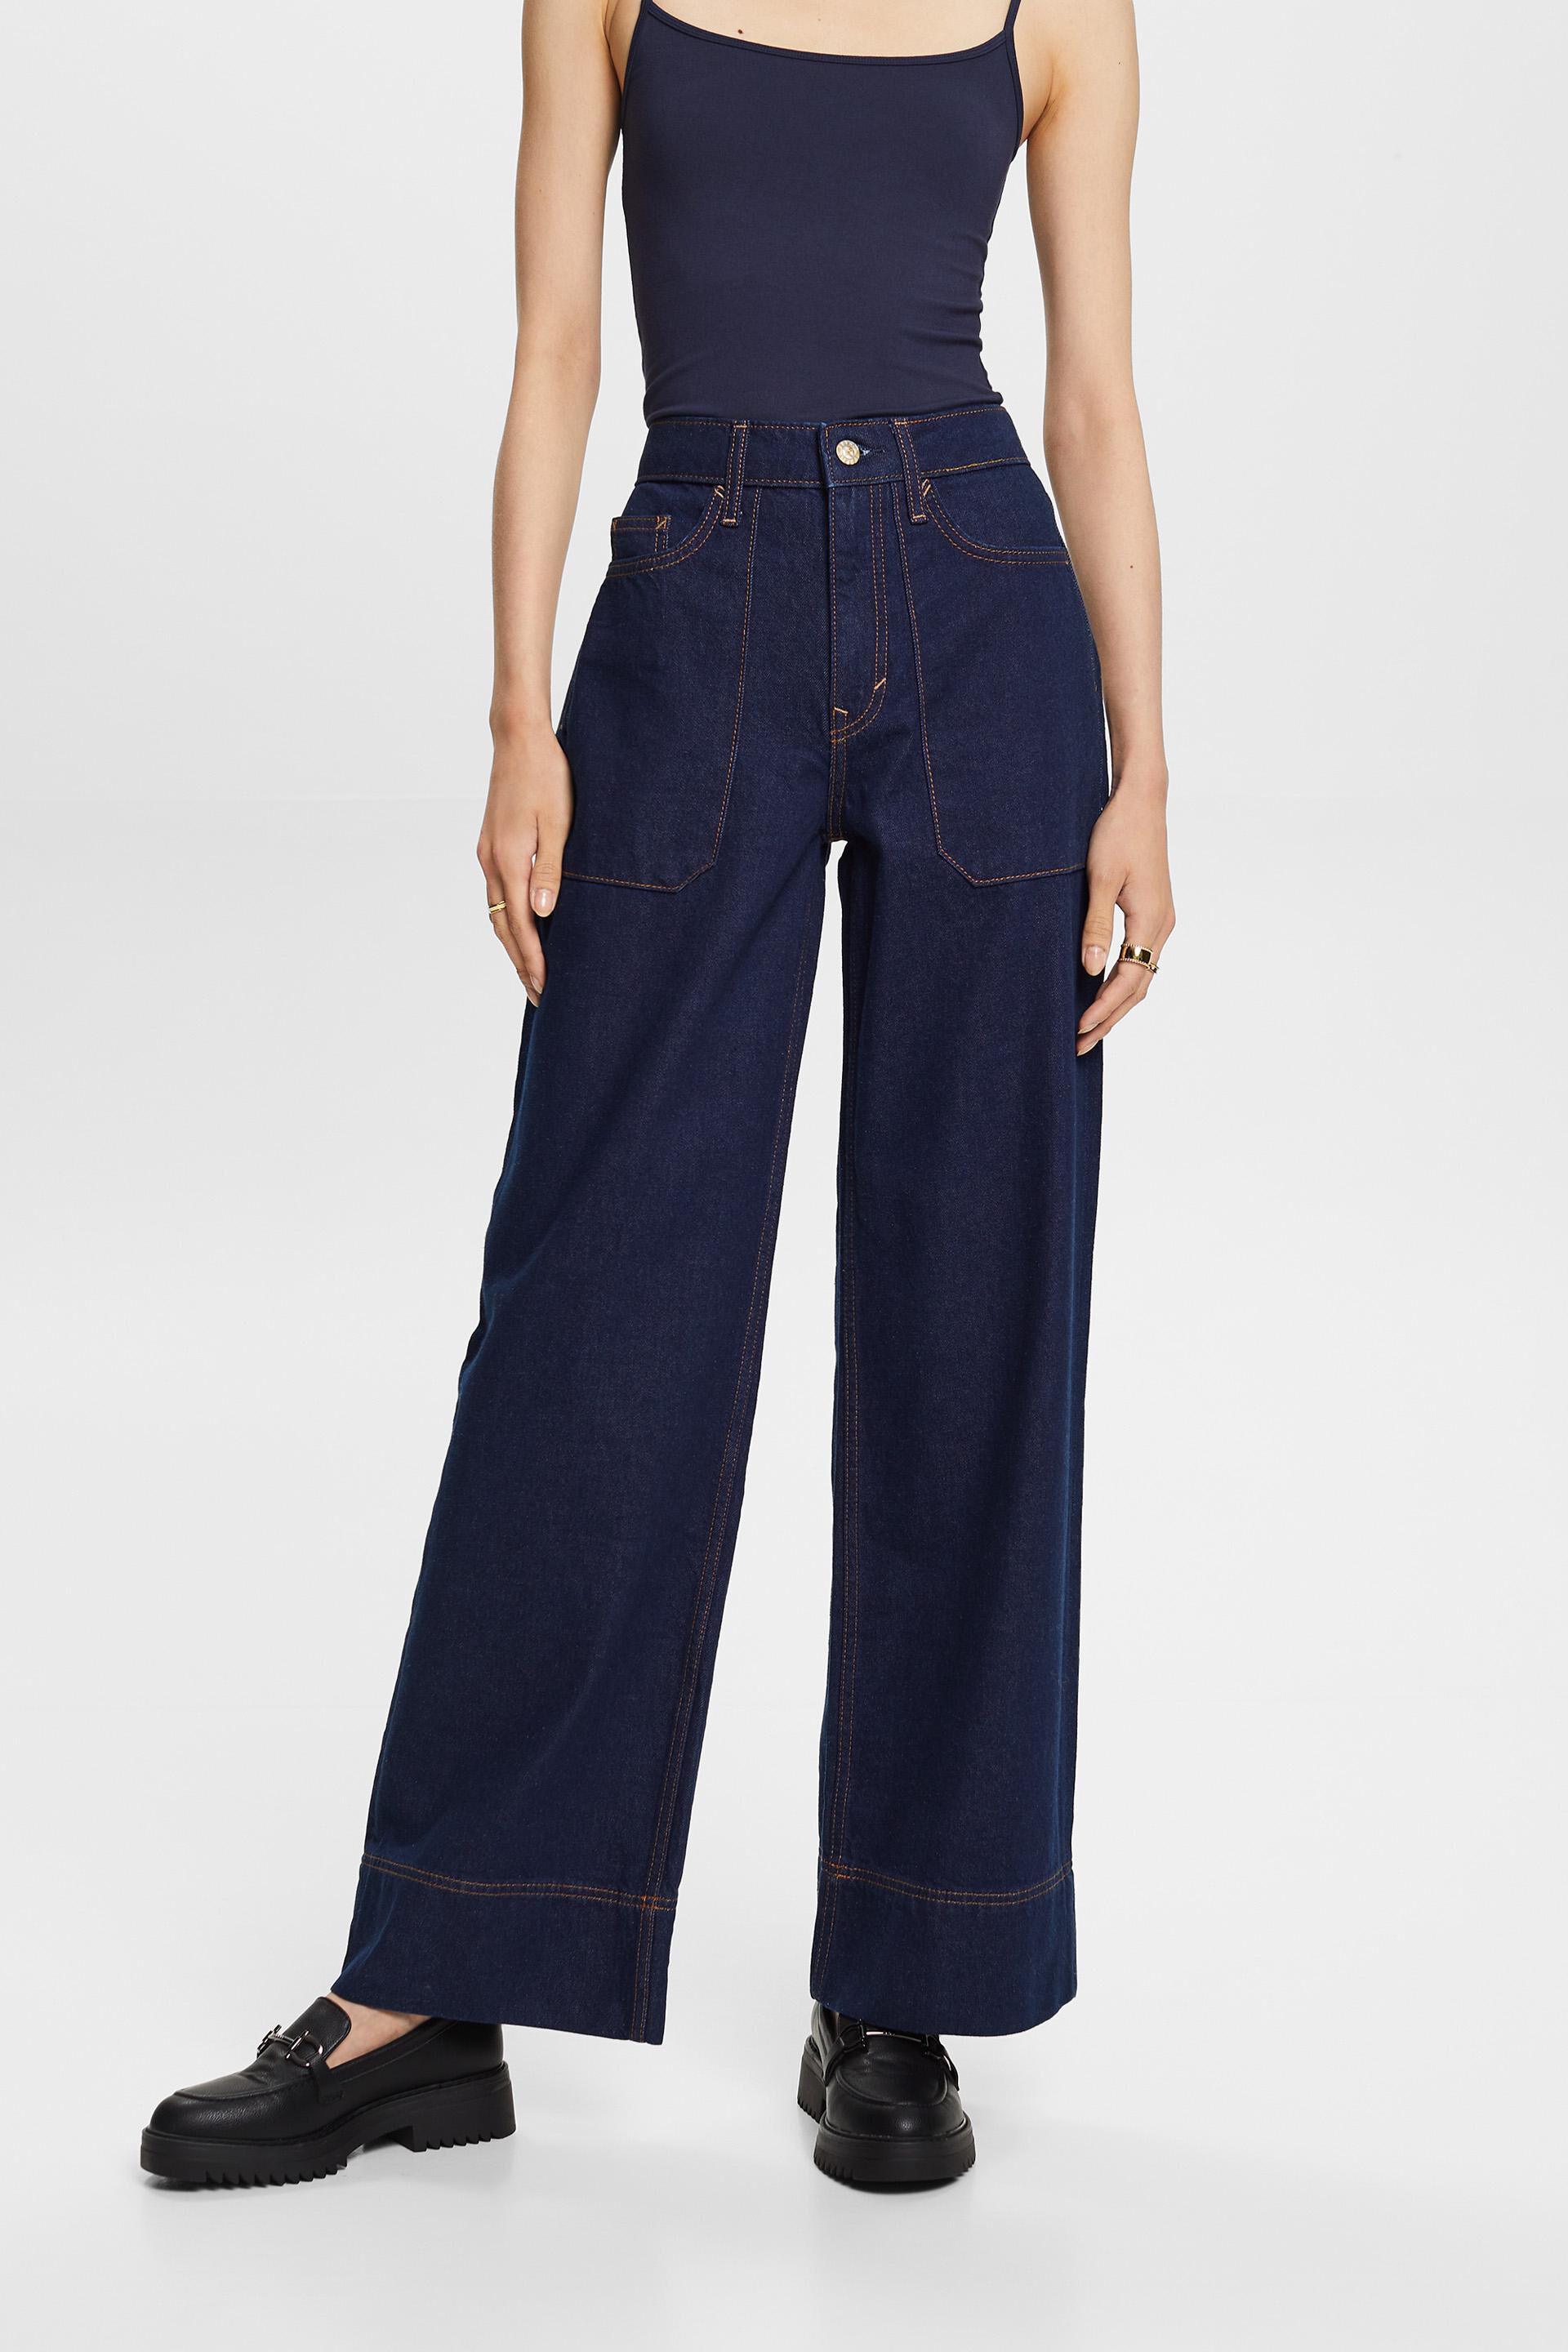 Esprit Damen Retro wide leg jeans, cotton 100